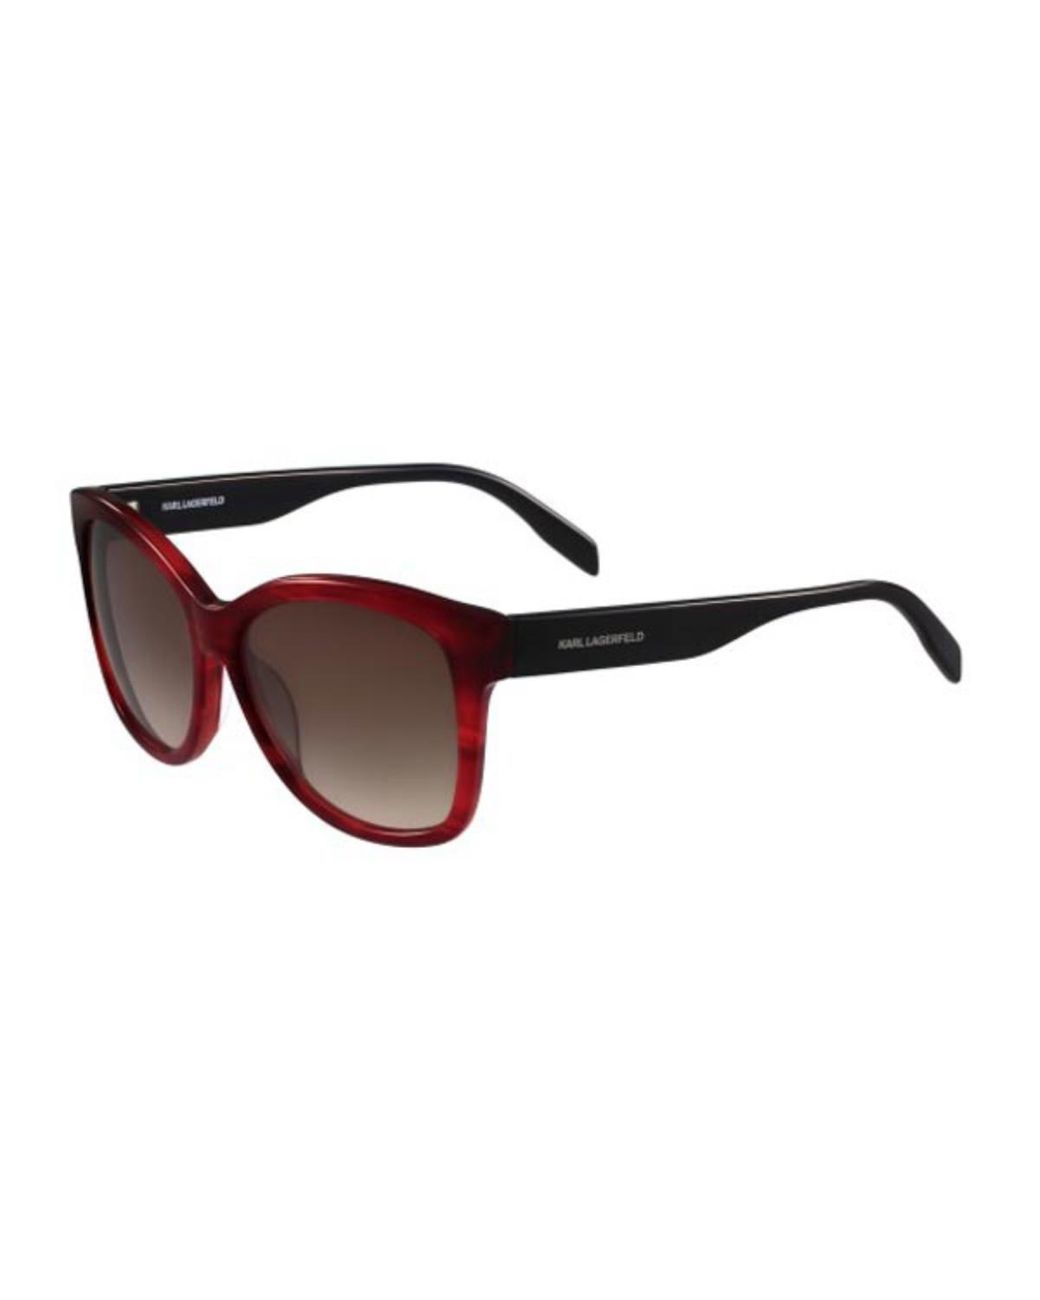 Karl Lagerfeld Kl 909s 133 Women's Sunglasses Red - Lyst